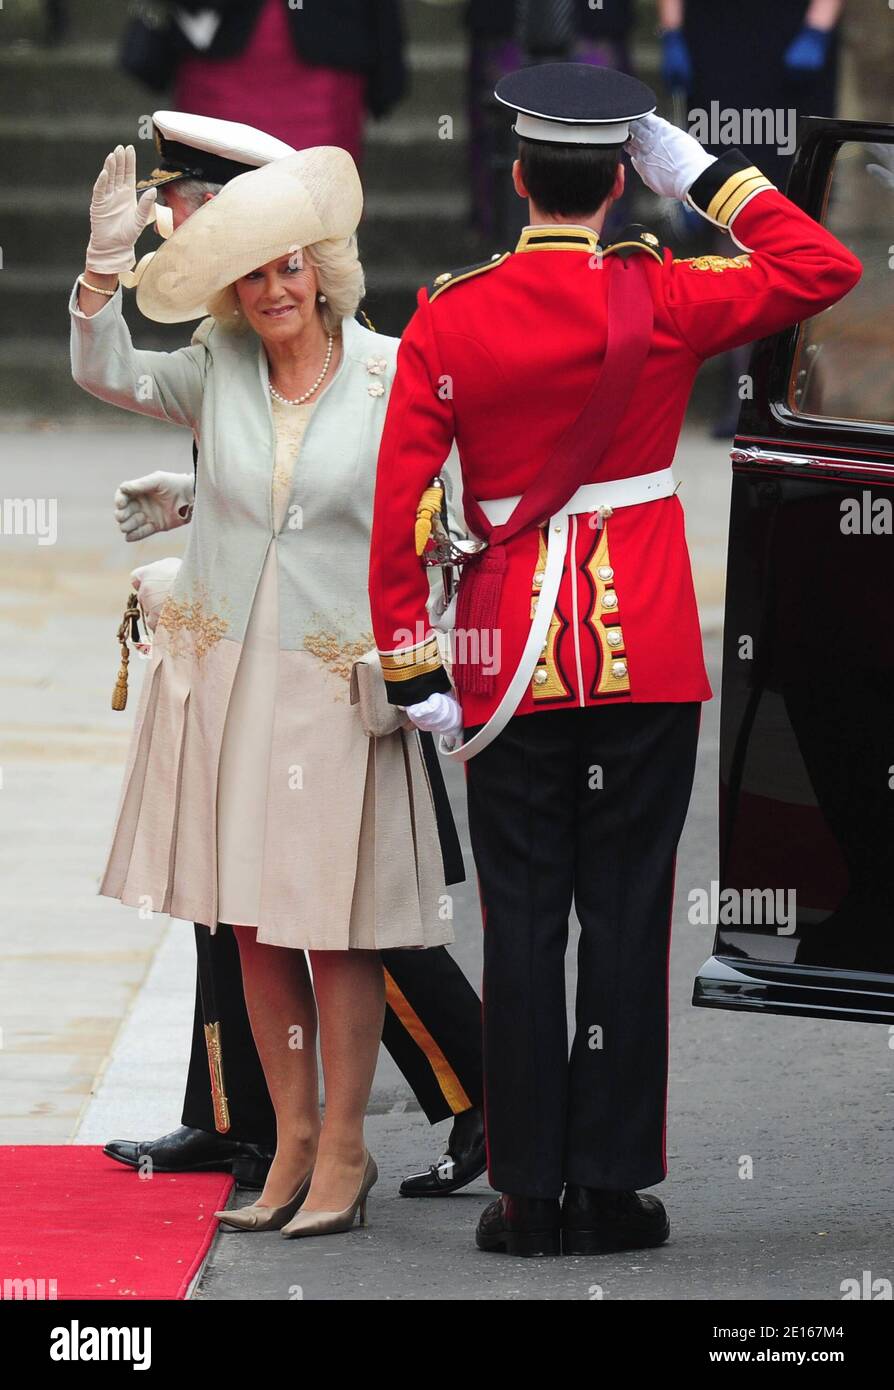 Prinz Charles, der Prinz von Wales und Camilla Herzogin von Cornwall kommen in Westminster Abbey zur Hochzeit von Prinz William mit Kate Middleton, in London, Großbritannien, am 29. April 2011 an. Foto von Frederic Nebinger/ABACAPRESS.COM Stockfoto